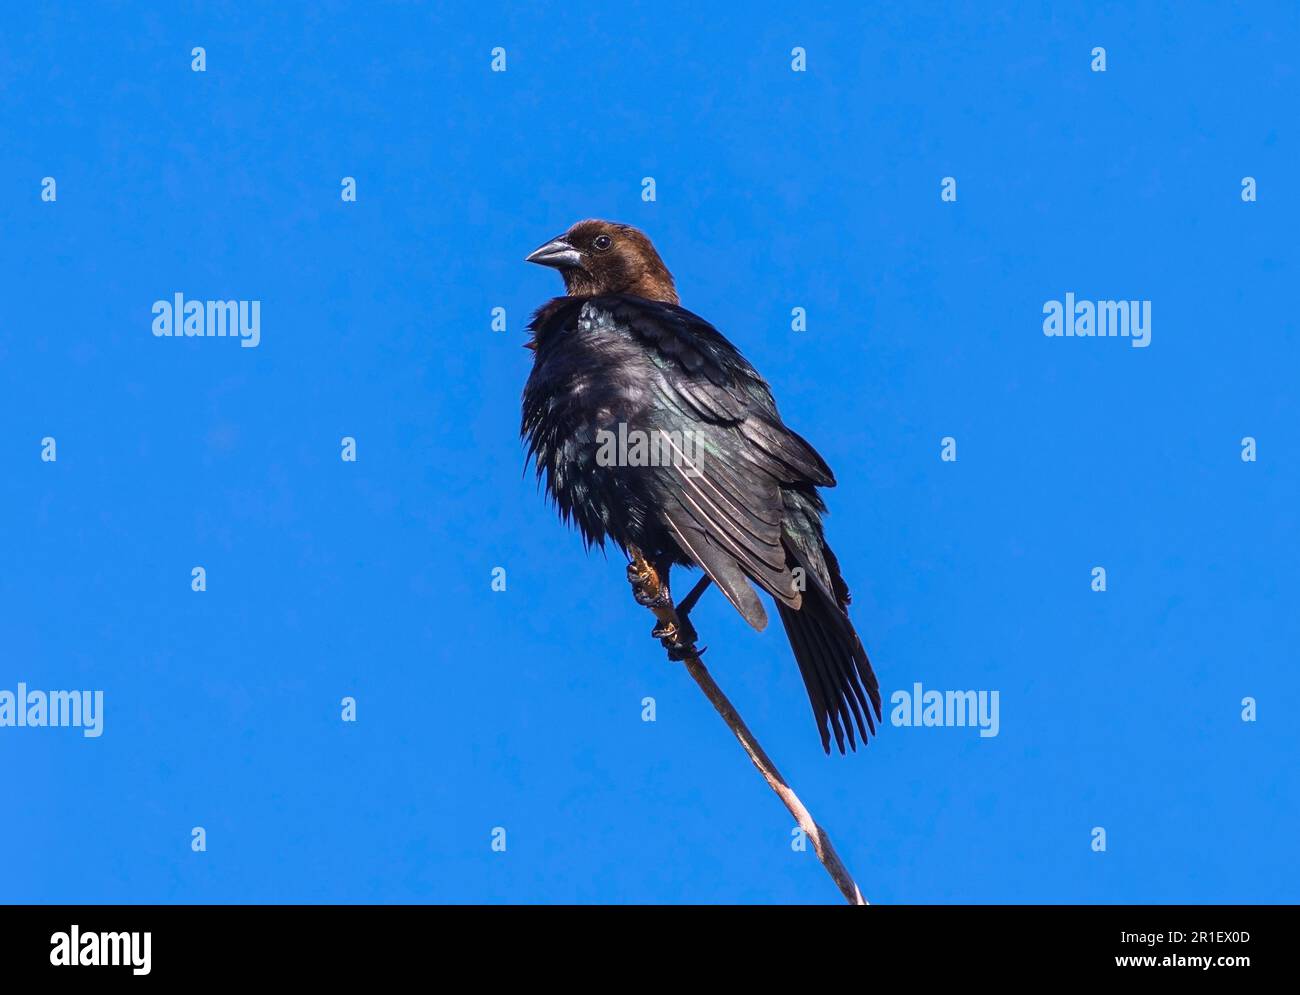 Ein brauner Cowbird sitzt auf einem Steg vor einem tiefen blauen Himmel und schüttelt seine glitzernden dunklen Federn in der Sonne aus. Stockfoto